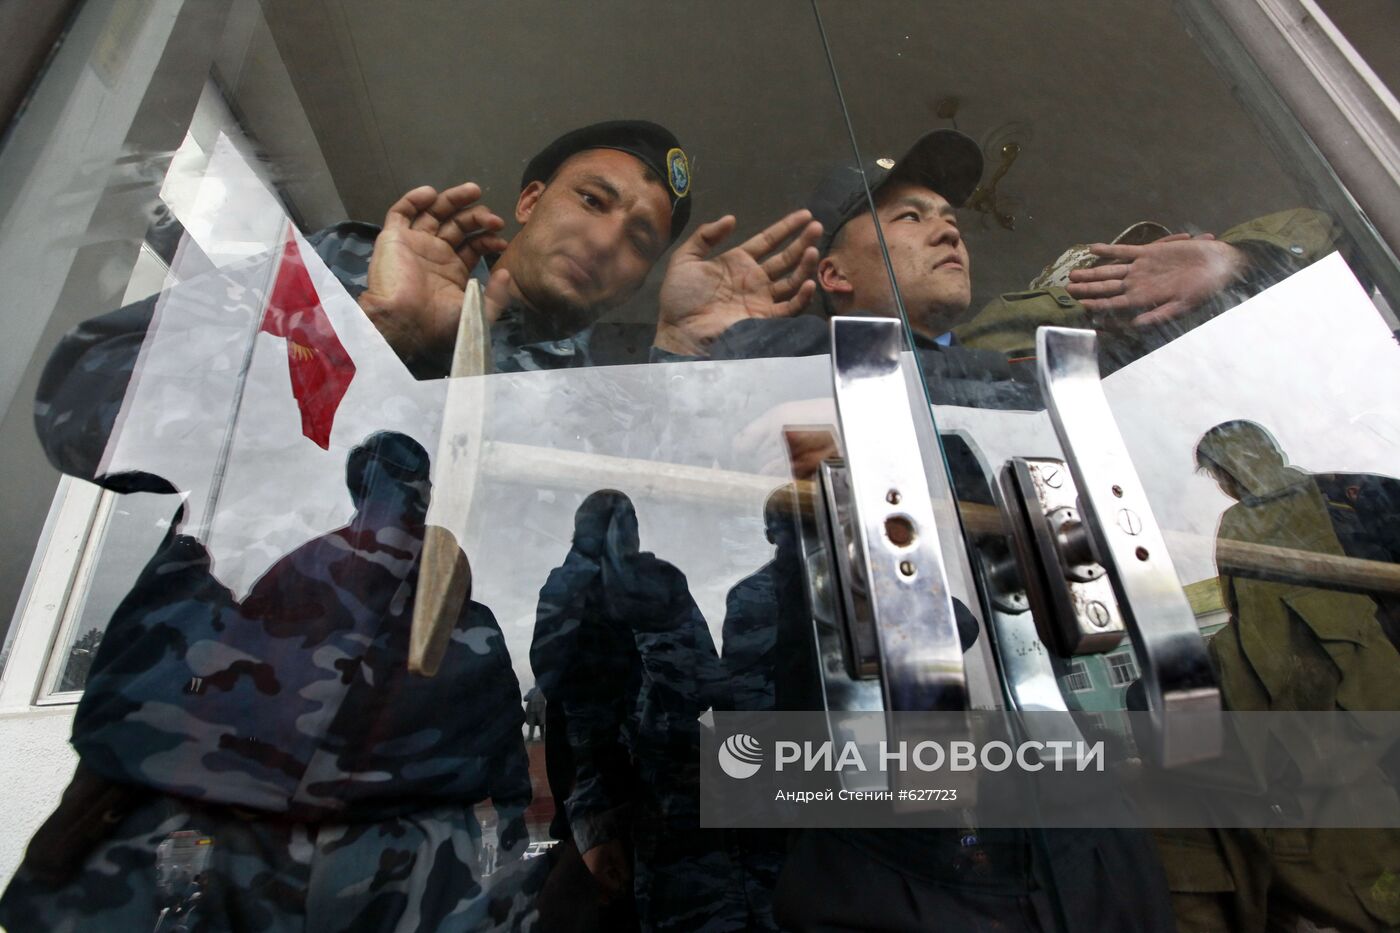 Столкновения в киргизском городе Ош